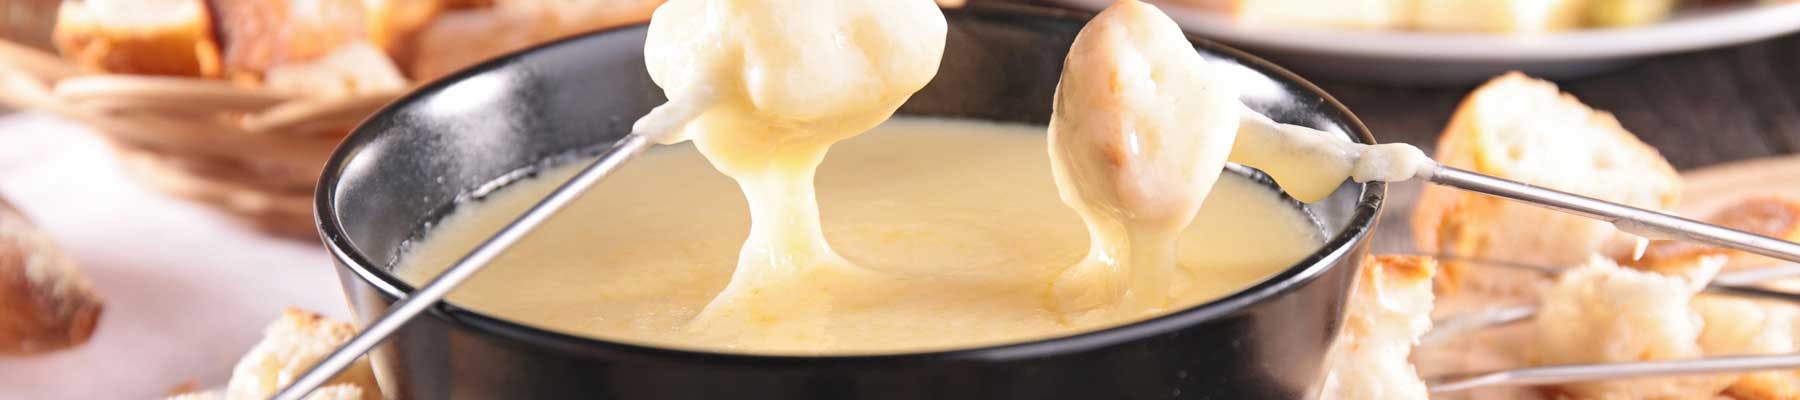 Raclette e fonduta di formaggio: suggerimenti, accompagnamenti, condimenti e un consiglio da intenditori per favorire la digestione